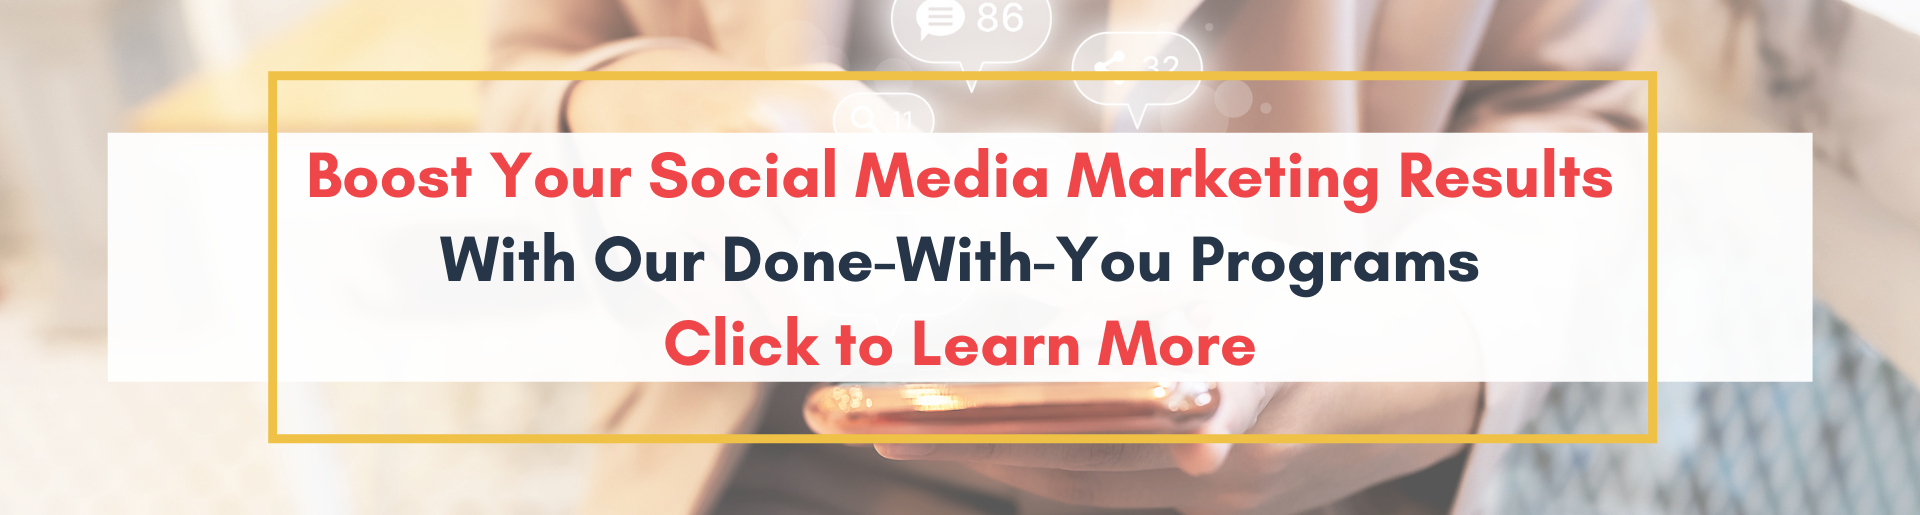 Social Media Marketing Blog Banner